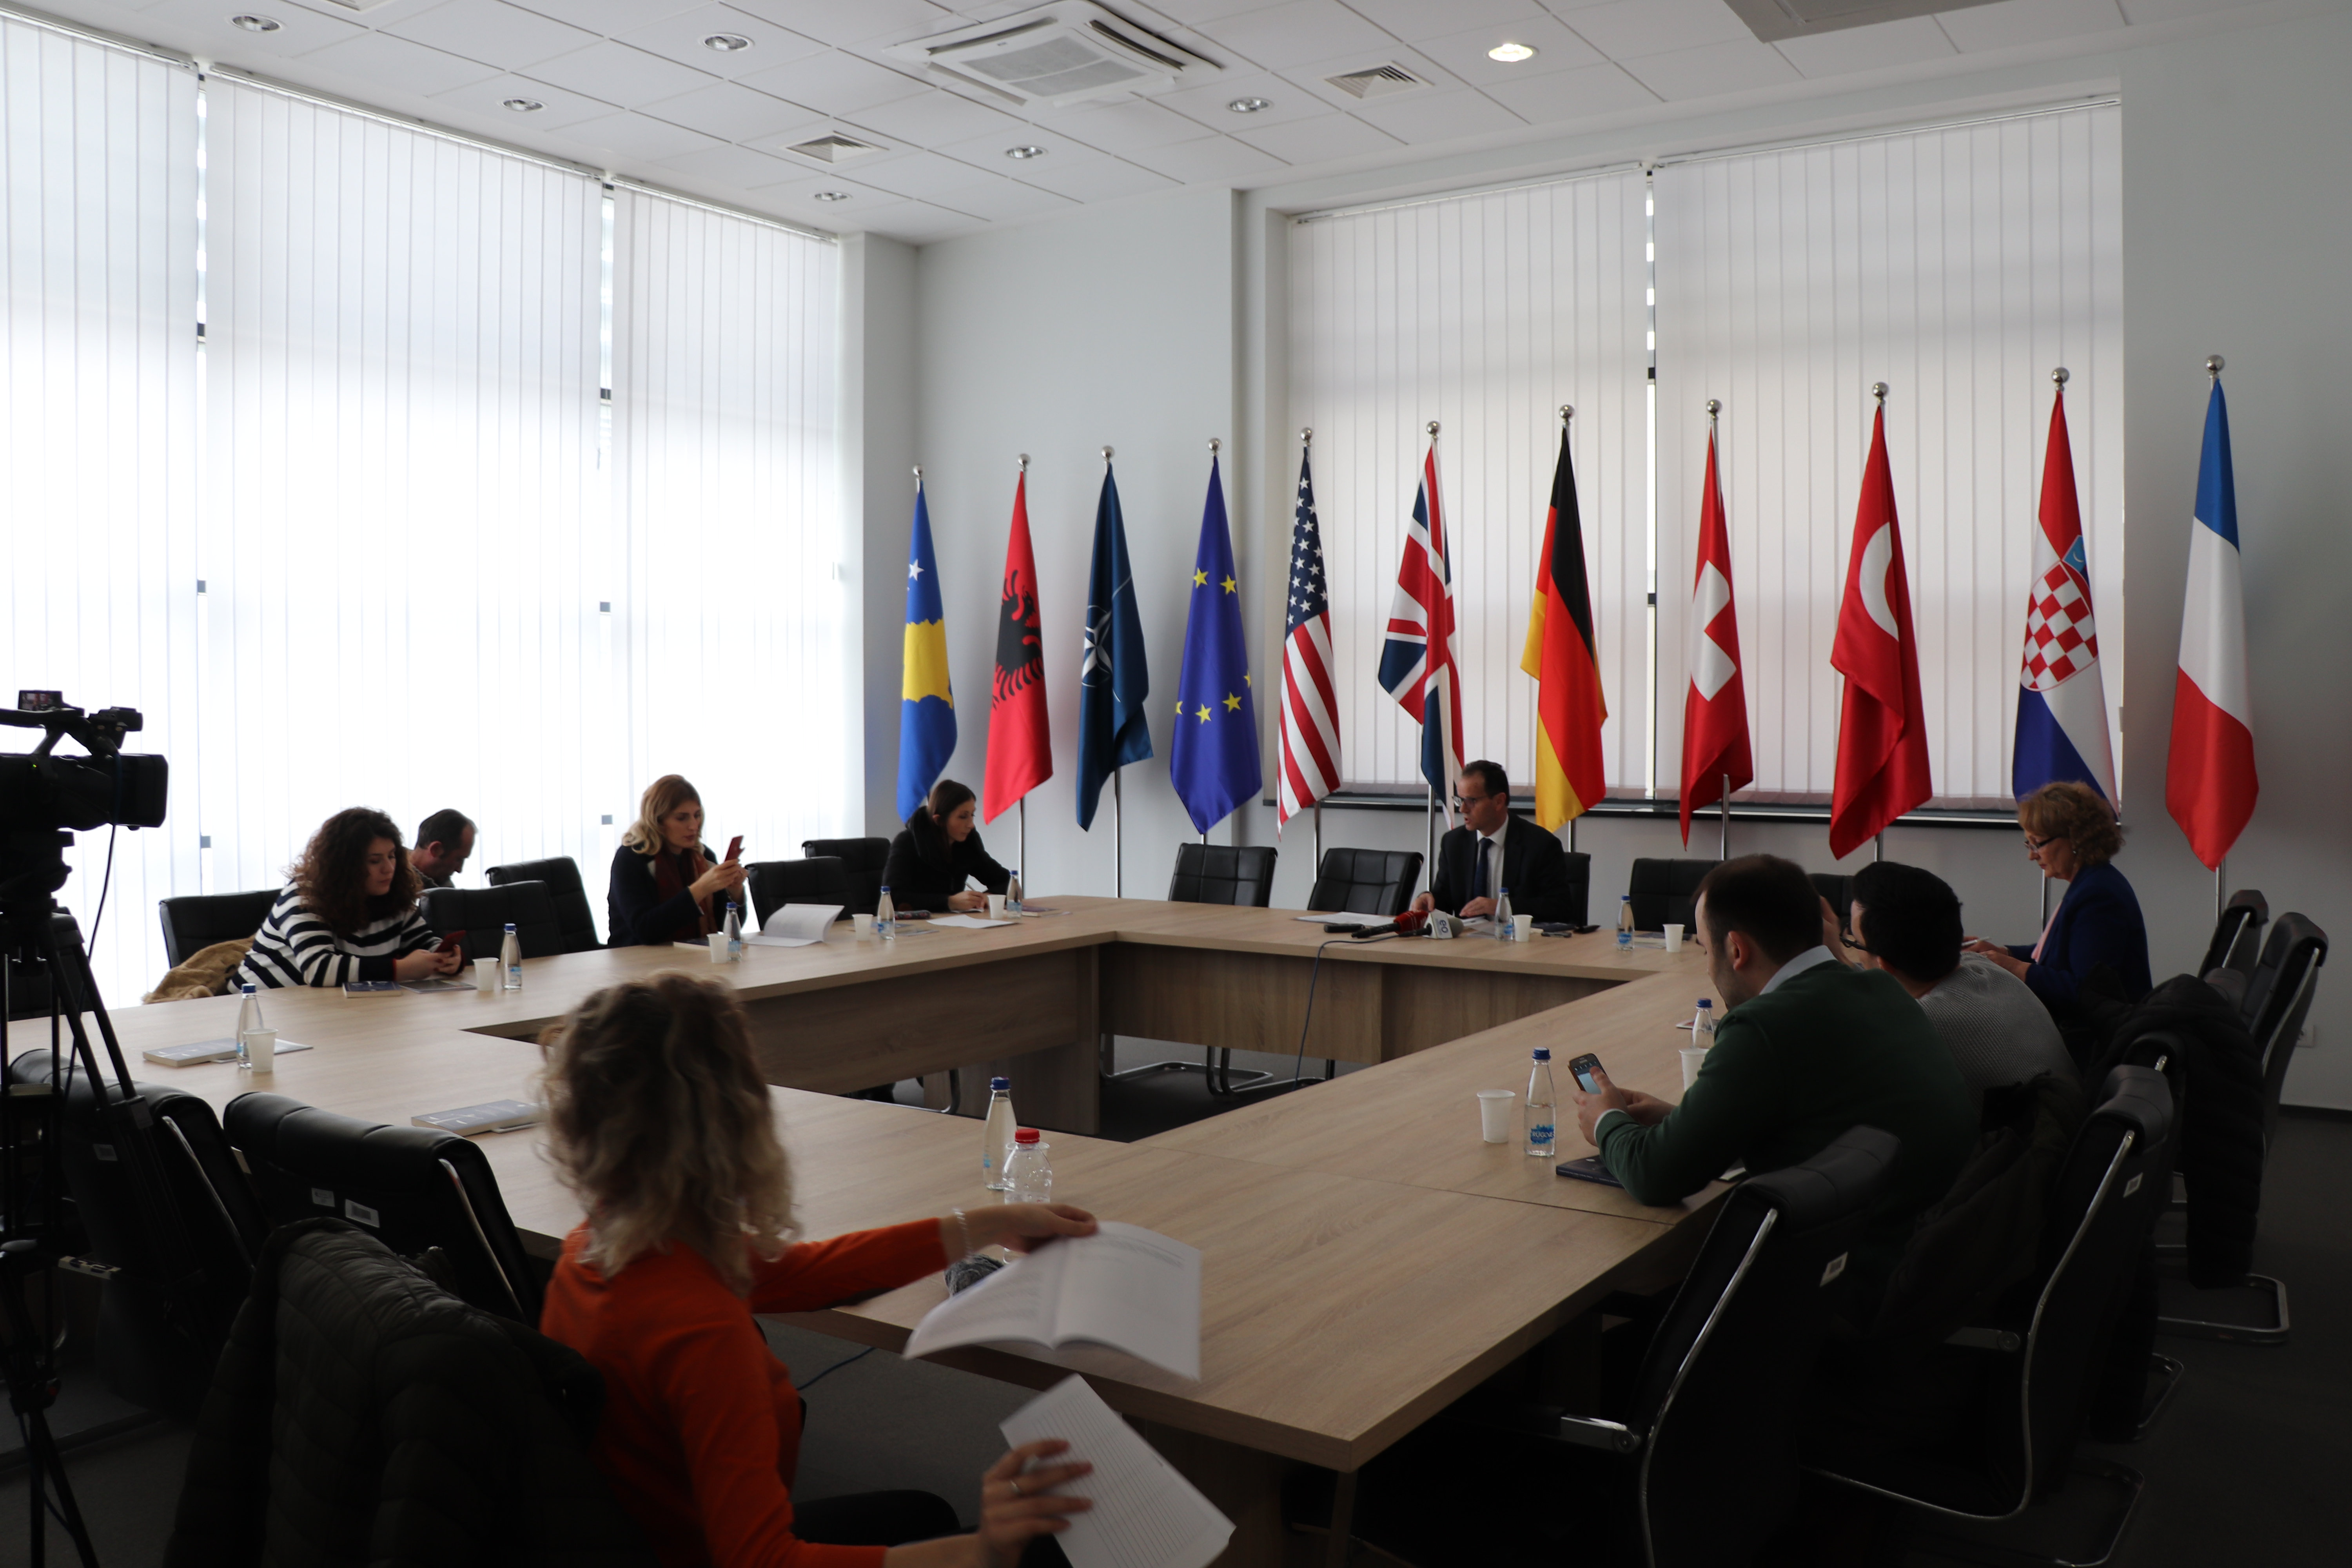 Filloj punimet Konferenca e Shtatë Vjetore e Gjyqësorit të Republikës së Kosovës